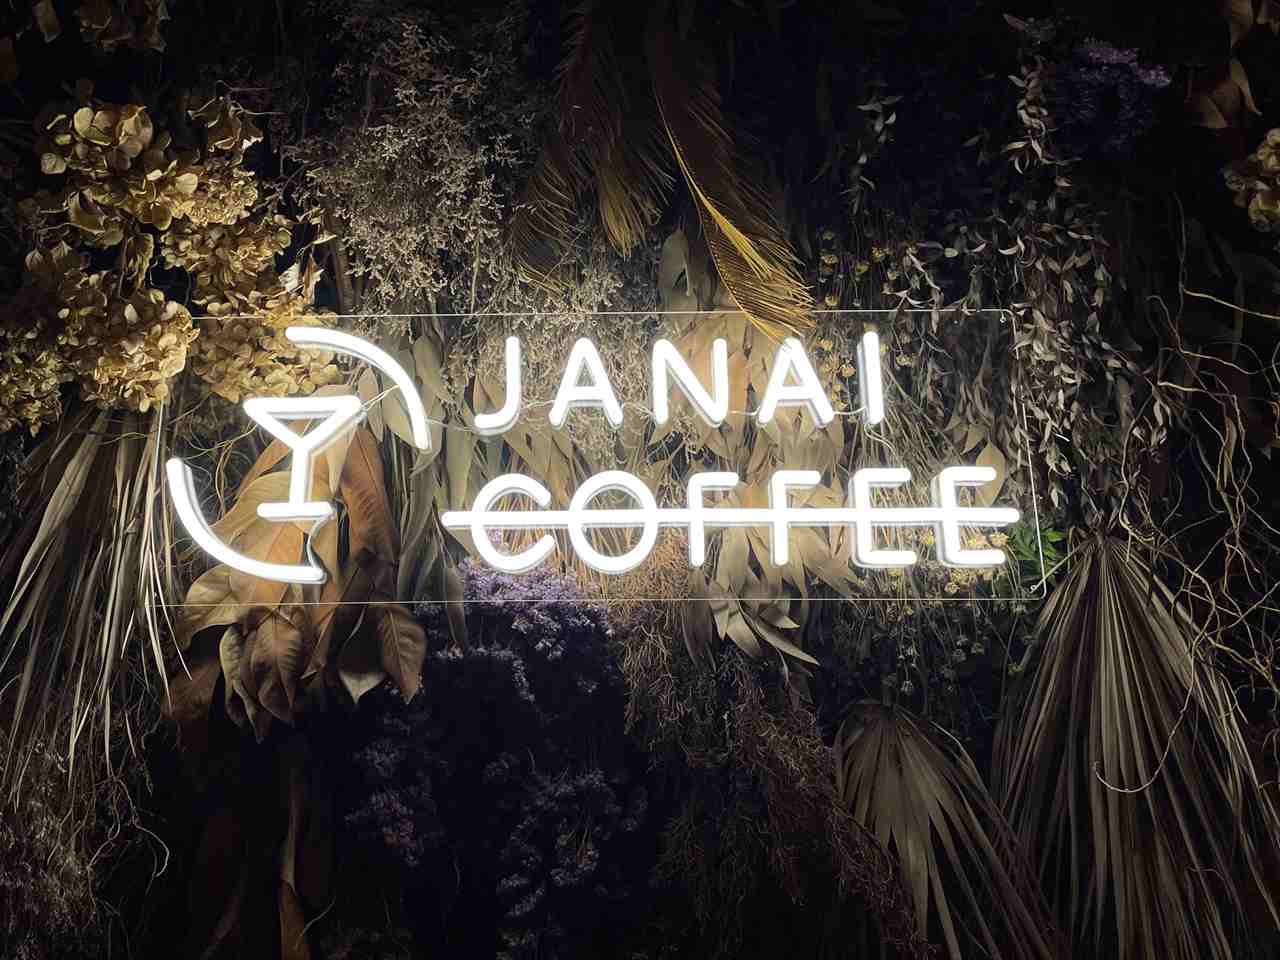 【大人気で予約必須】実はコーヒー屋じゃない!?秘密を隠した「JANAI COFFEE＜ジャナイコーヒー＞」徹底解剖